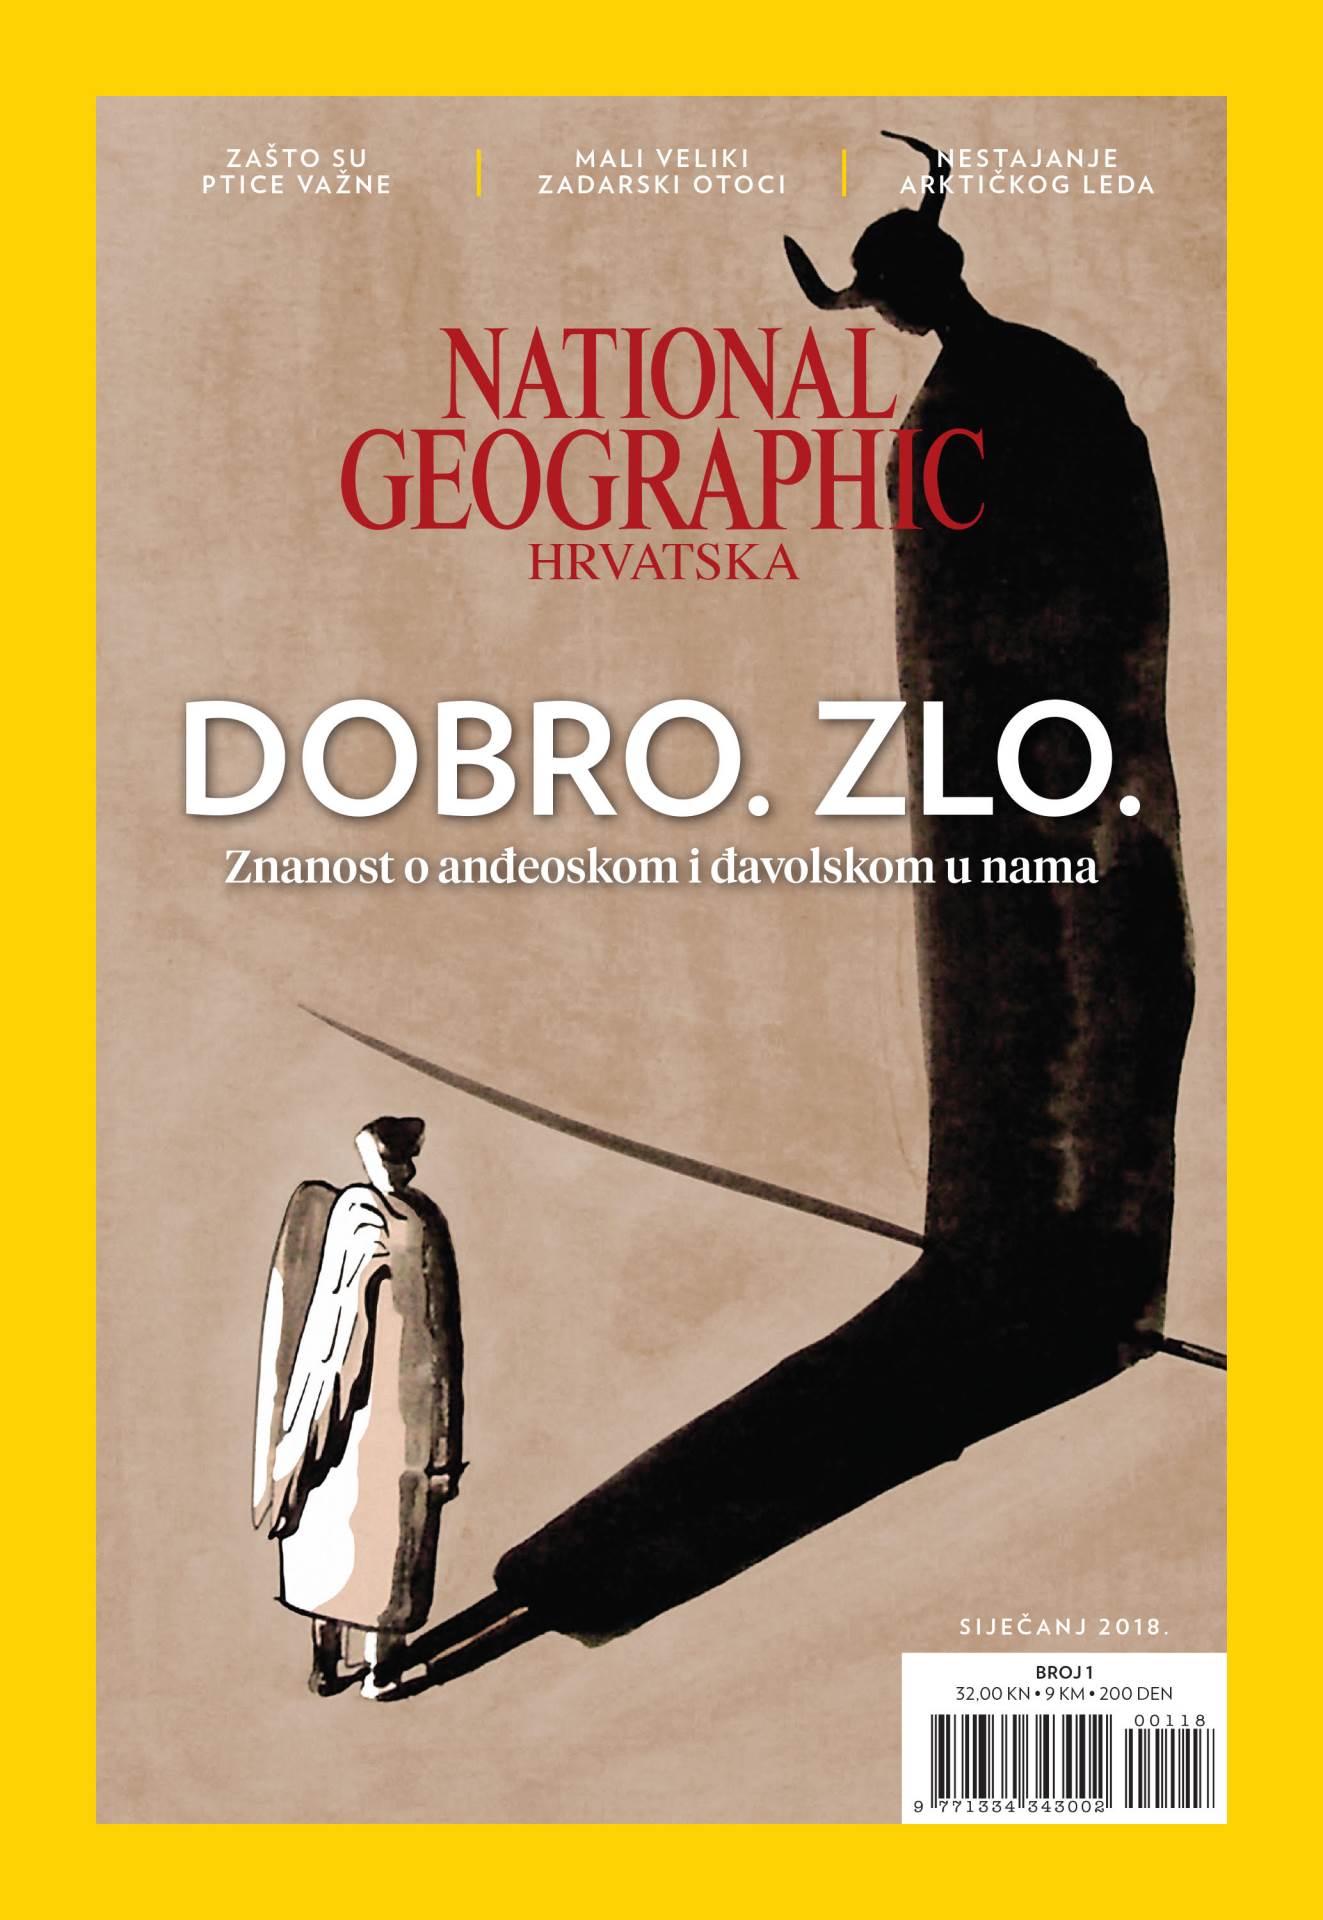 National Geographic Hrvatska daruje svim čitateljima stolni kalendar za 2018. godinu!